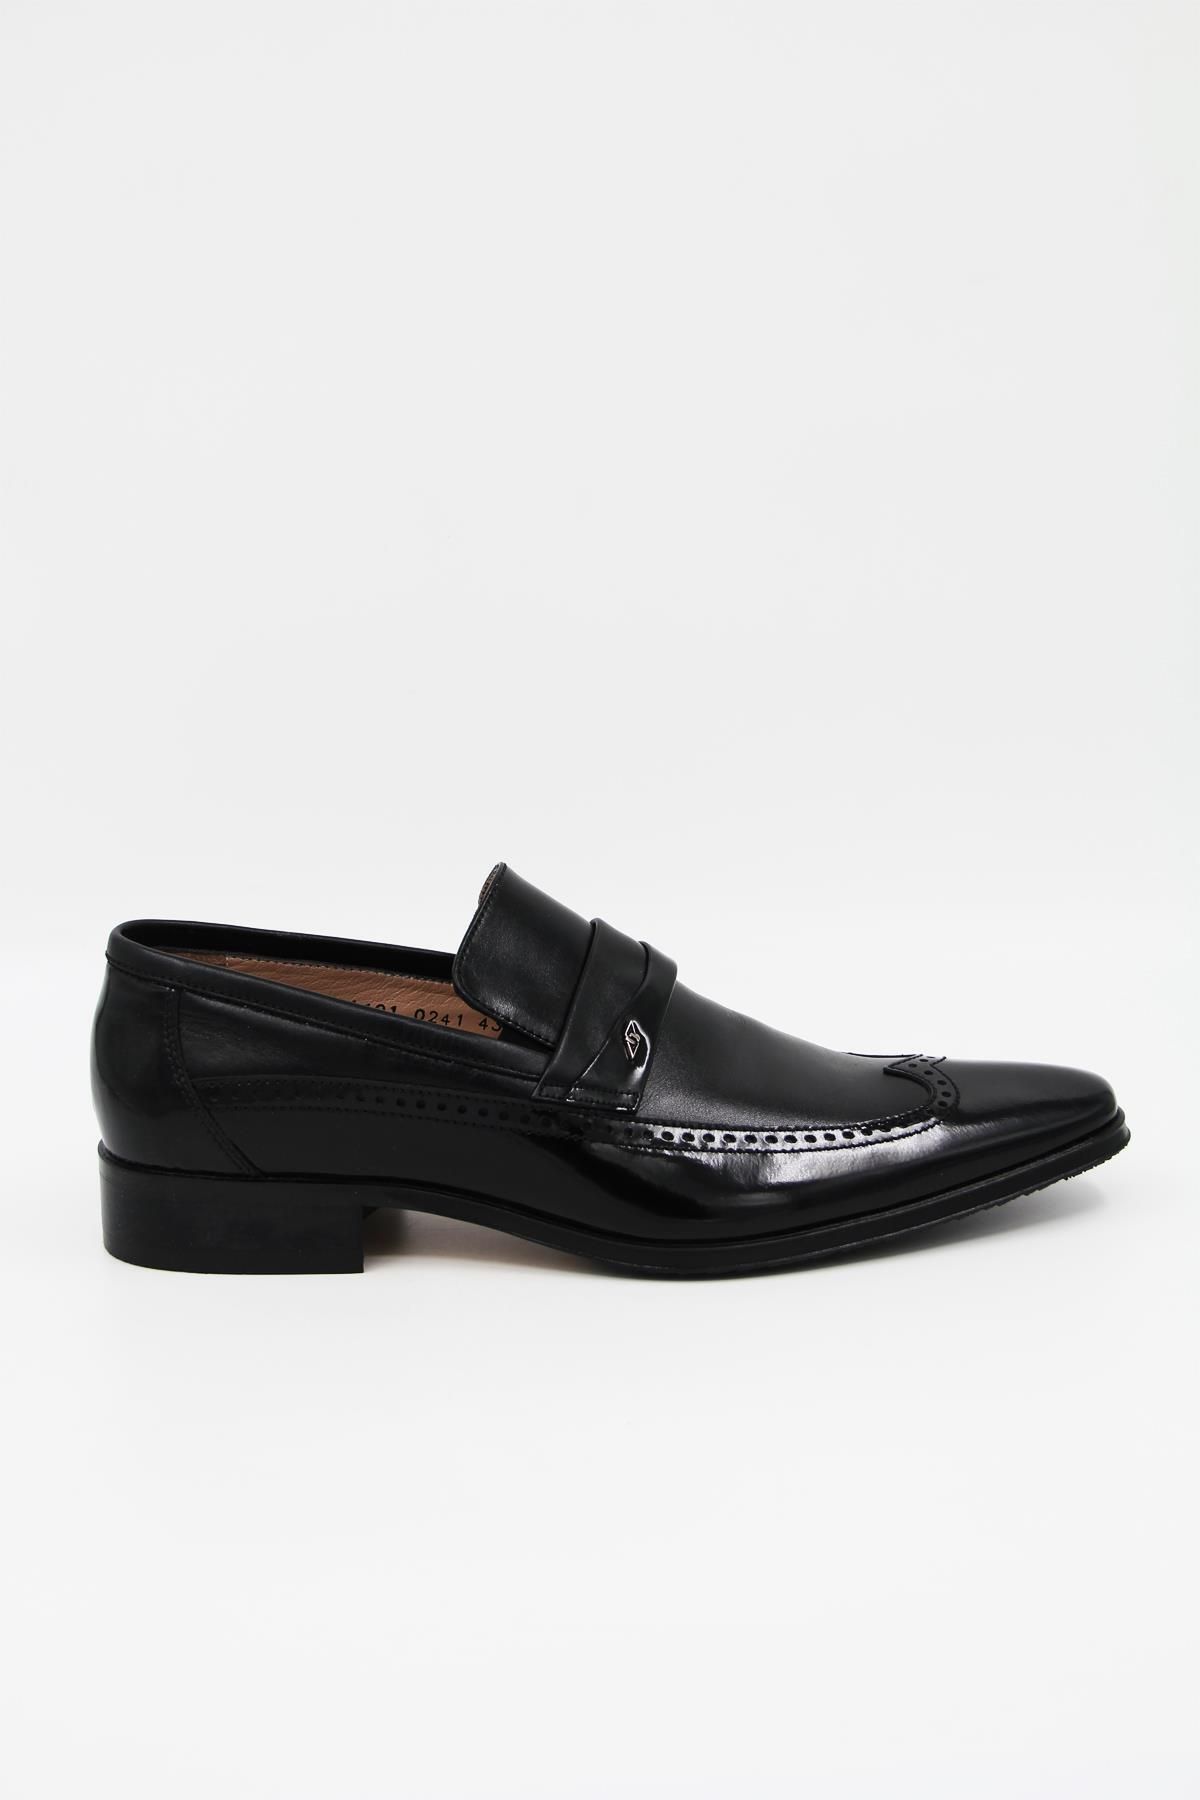 Nevzat Onay L0241-018 Erkek Klasik Ayakkabı - Siyah